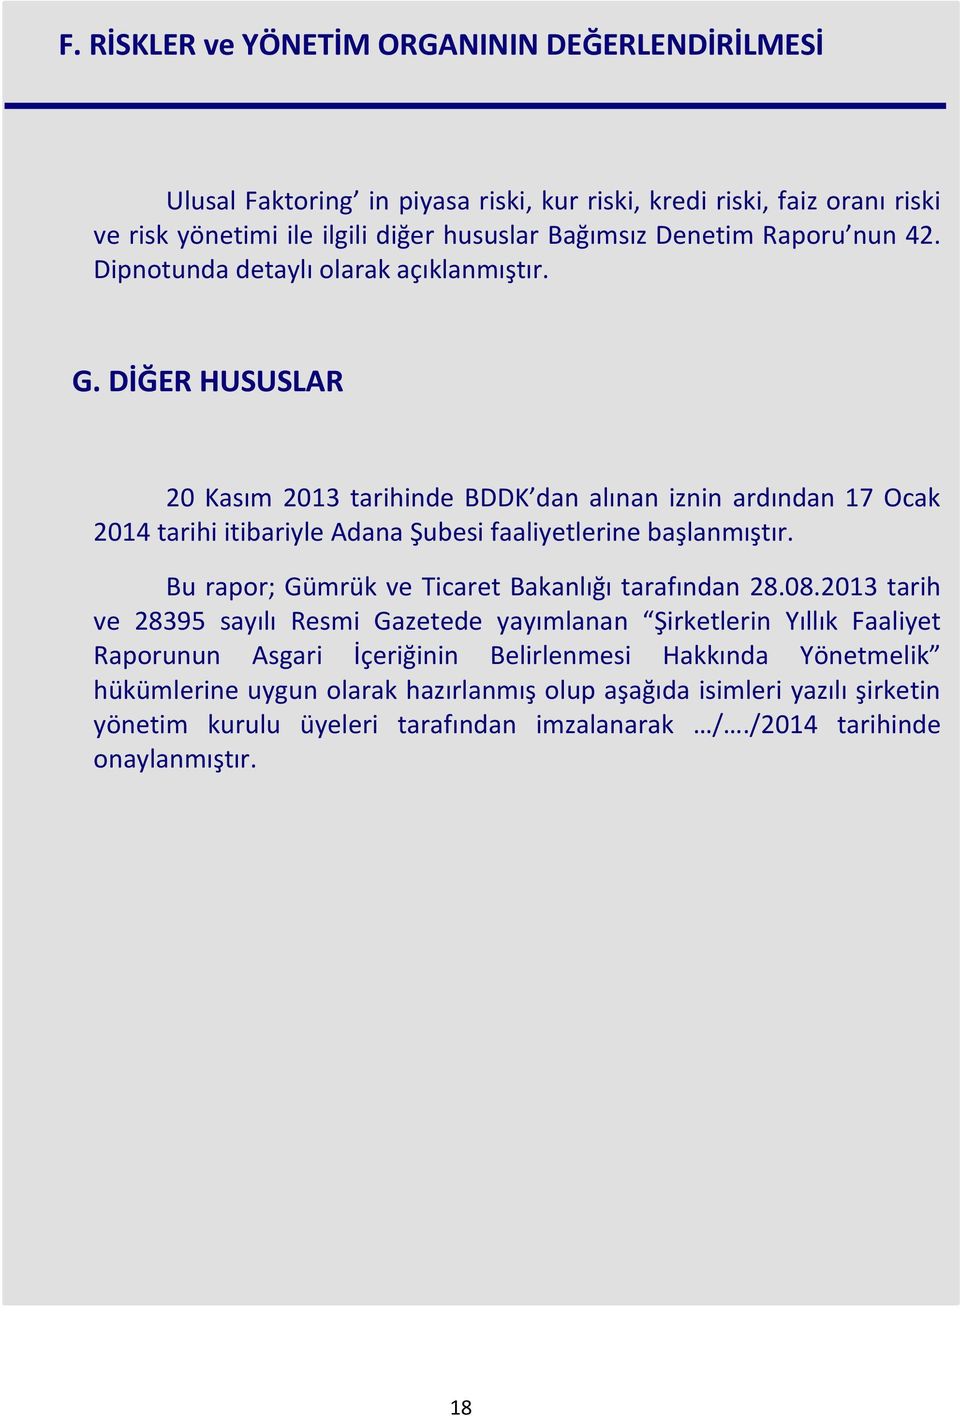 DİĞER HUSUSLAR 20 Kasım 2013 tarihinde BDDK dan alınan iznin ardından 17 Ocak 2014 tarihi itibariyle Adana Şubesi faaliyetlerine başlanmıştır.